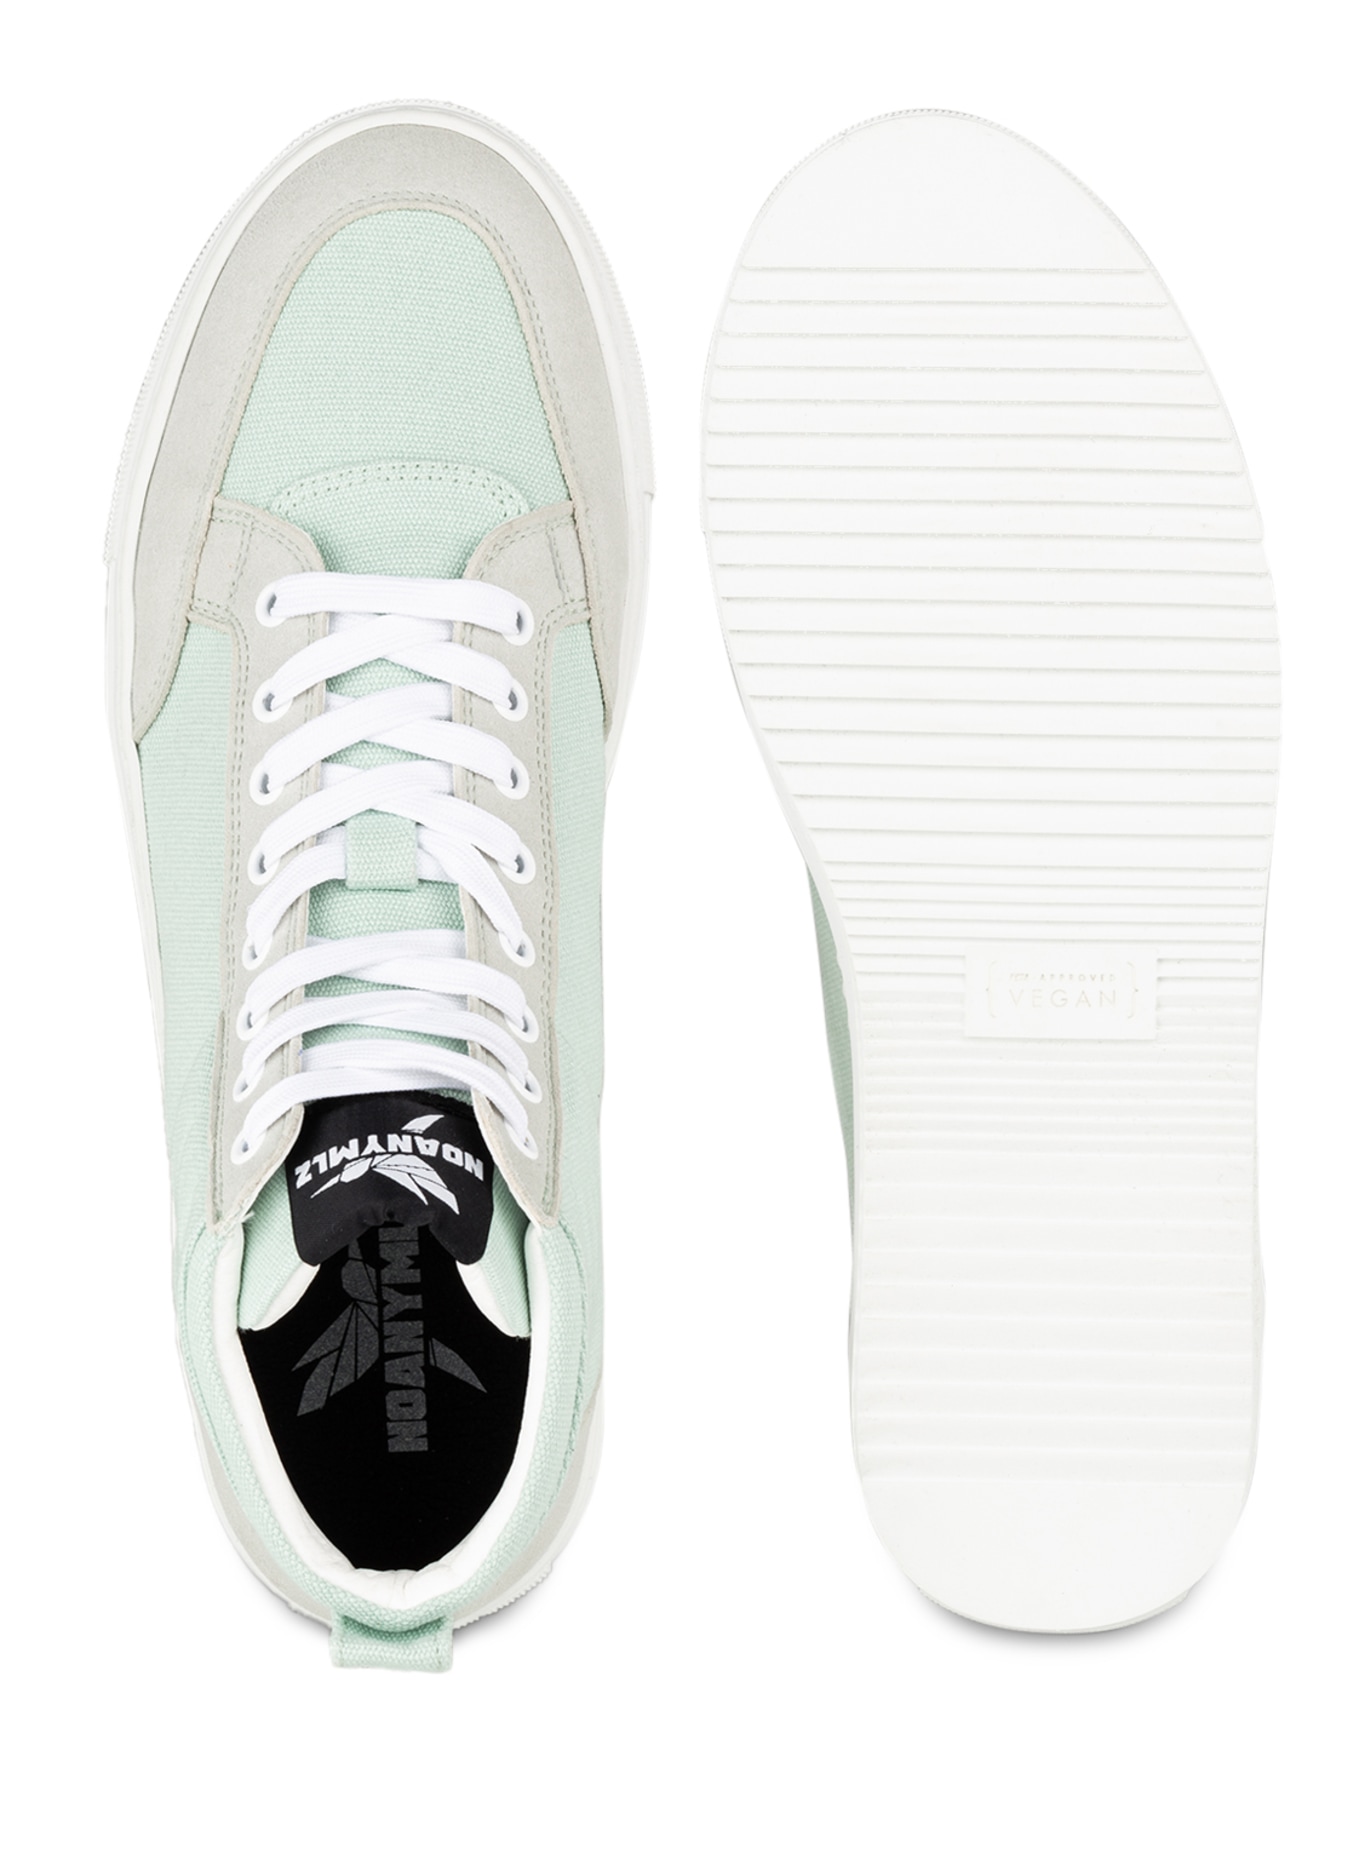 NOANYMLZ Hightop-Sneaker LEVEL G4, Farbe: MINT (Bild 5)